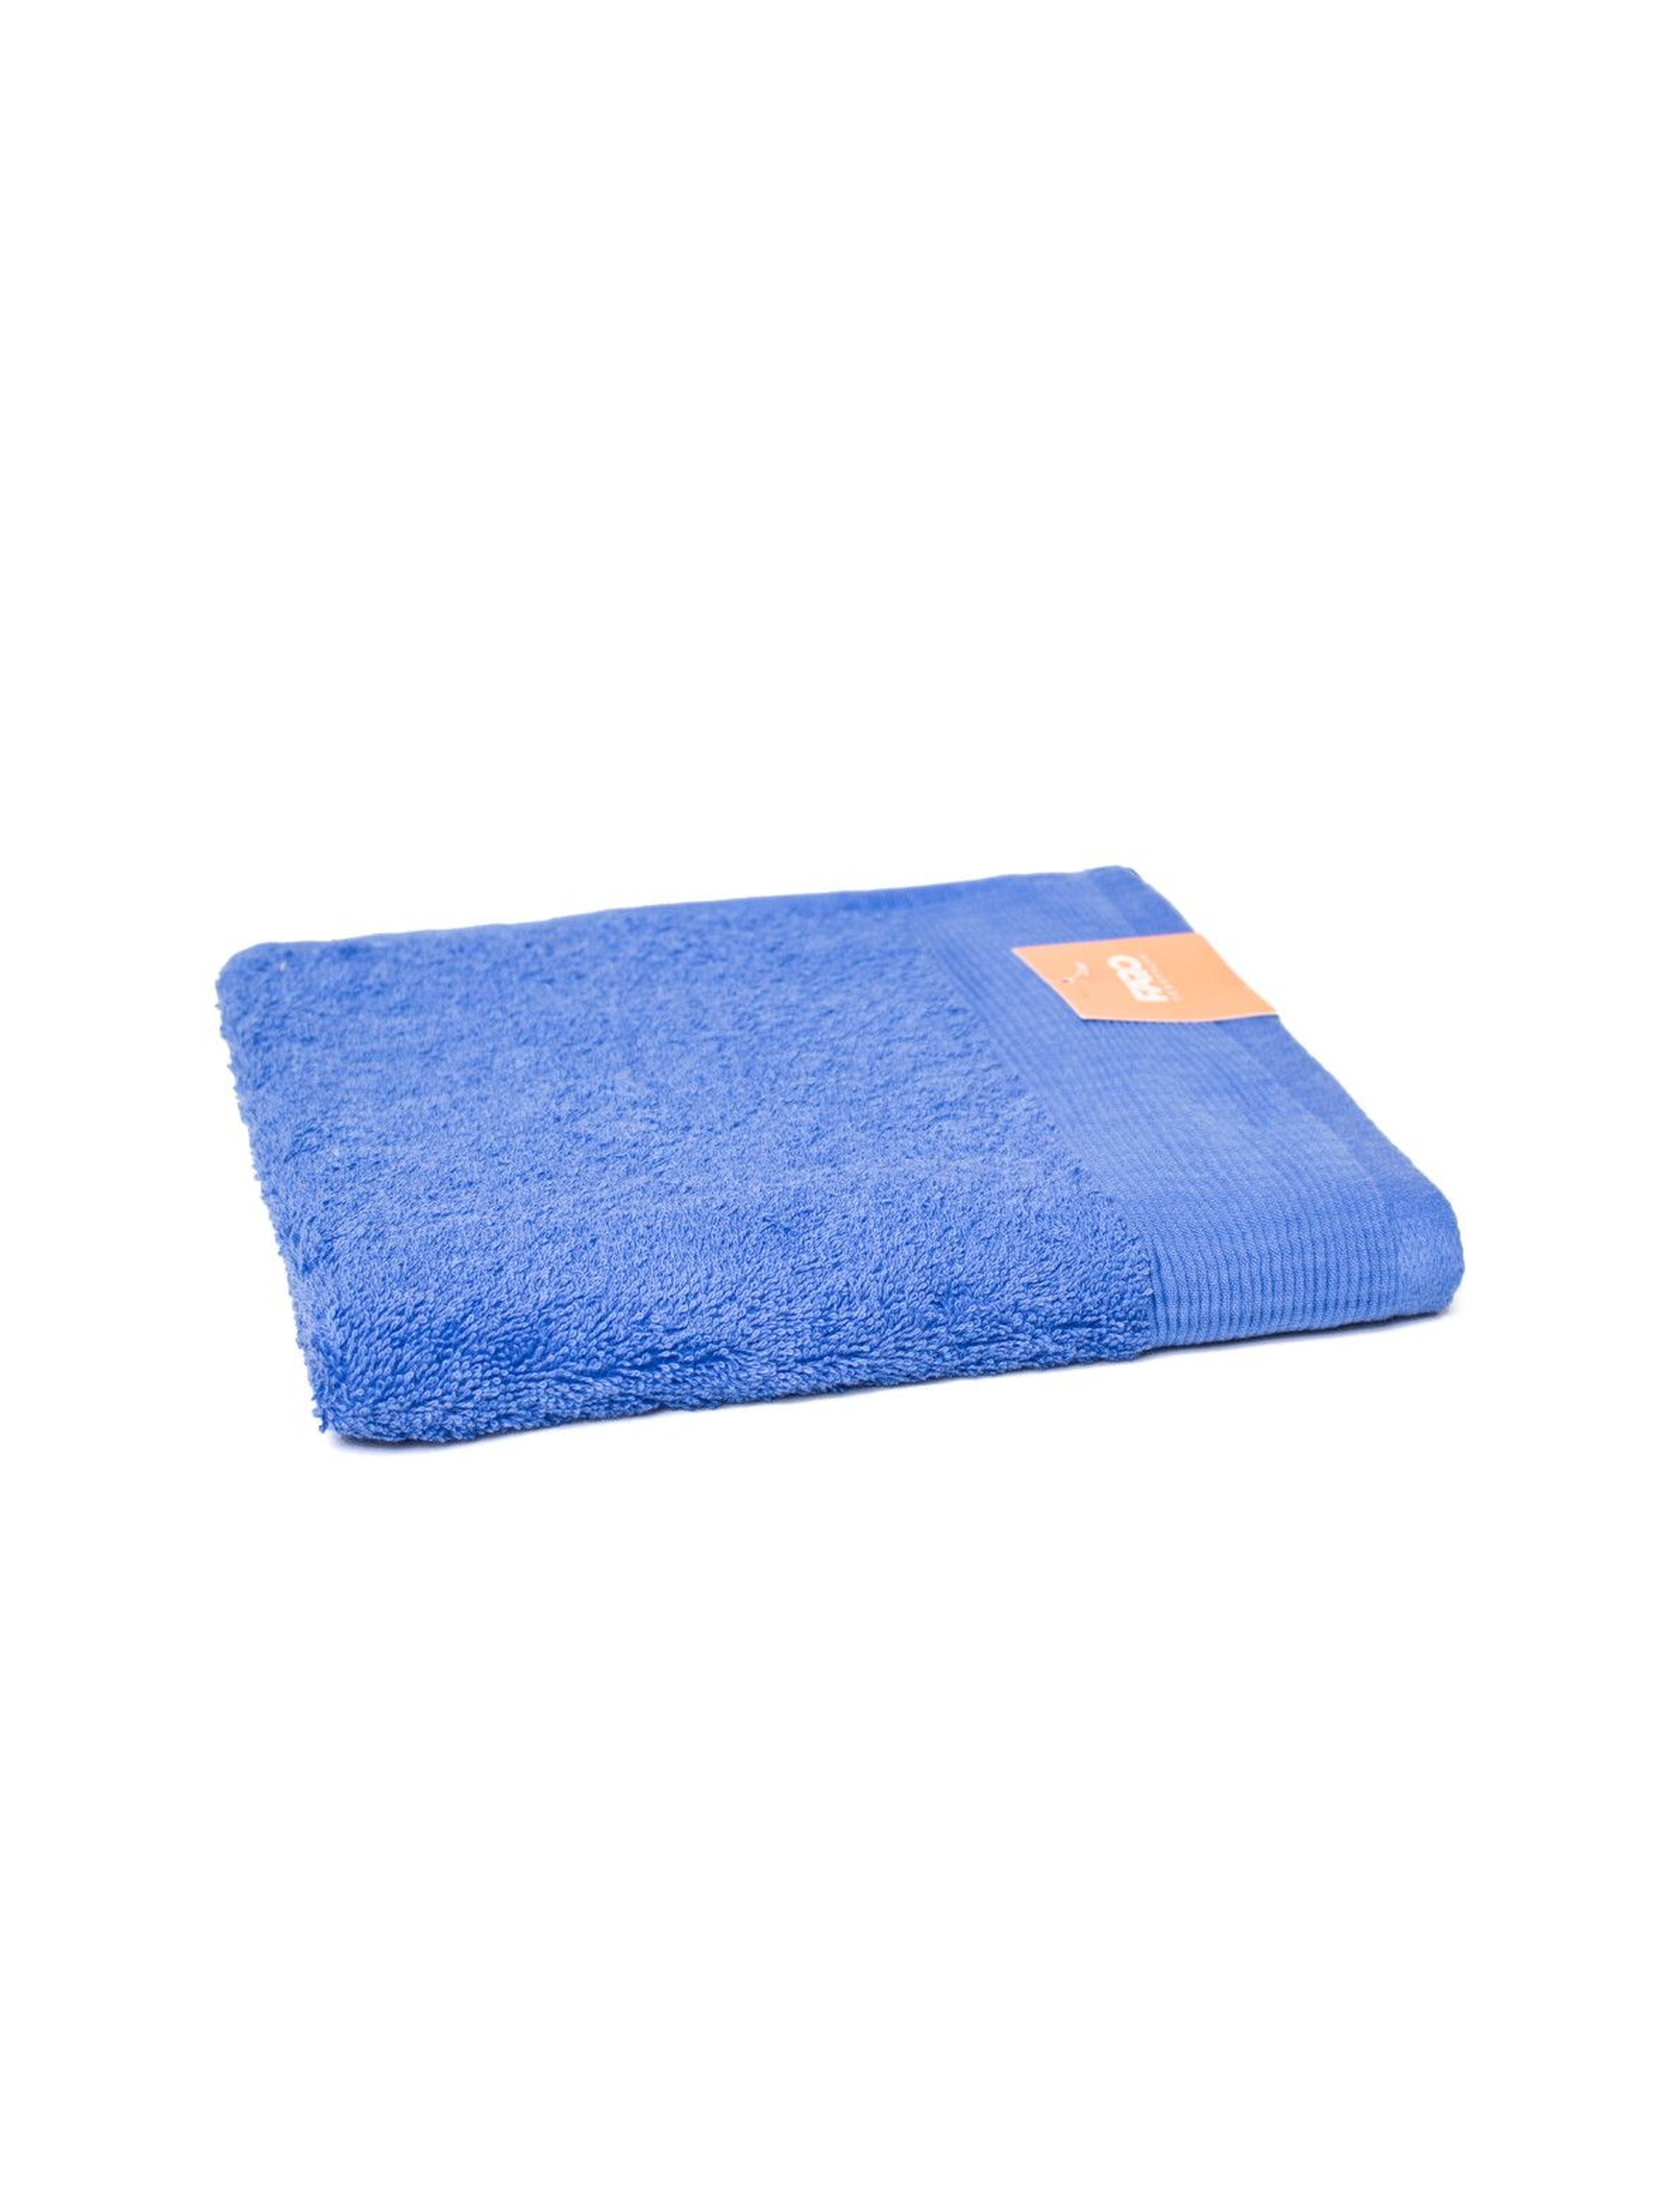 Ręcznik Aqua Frotte niebieski 50x100cm